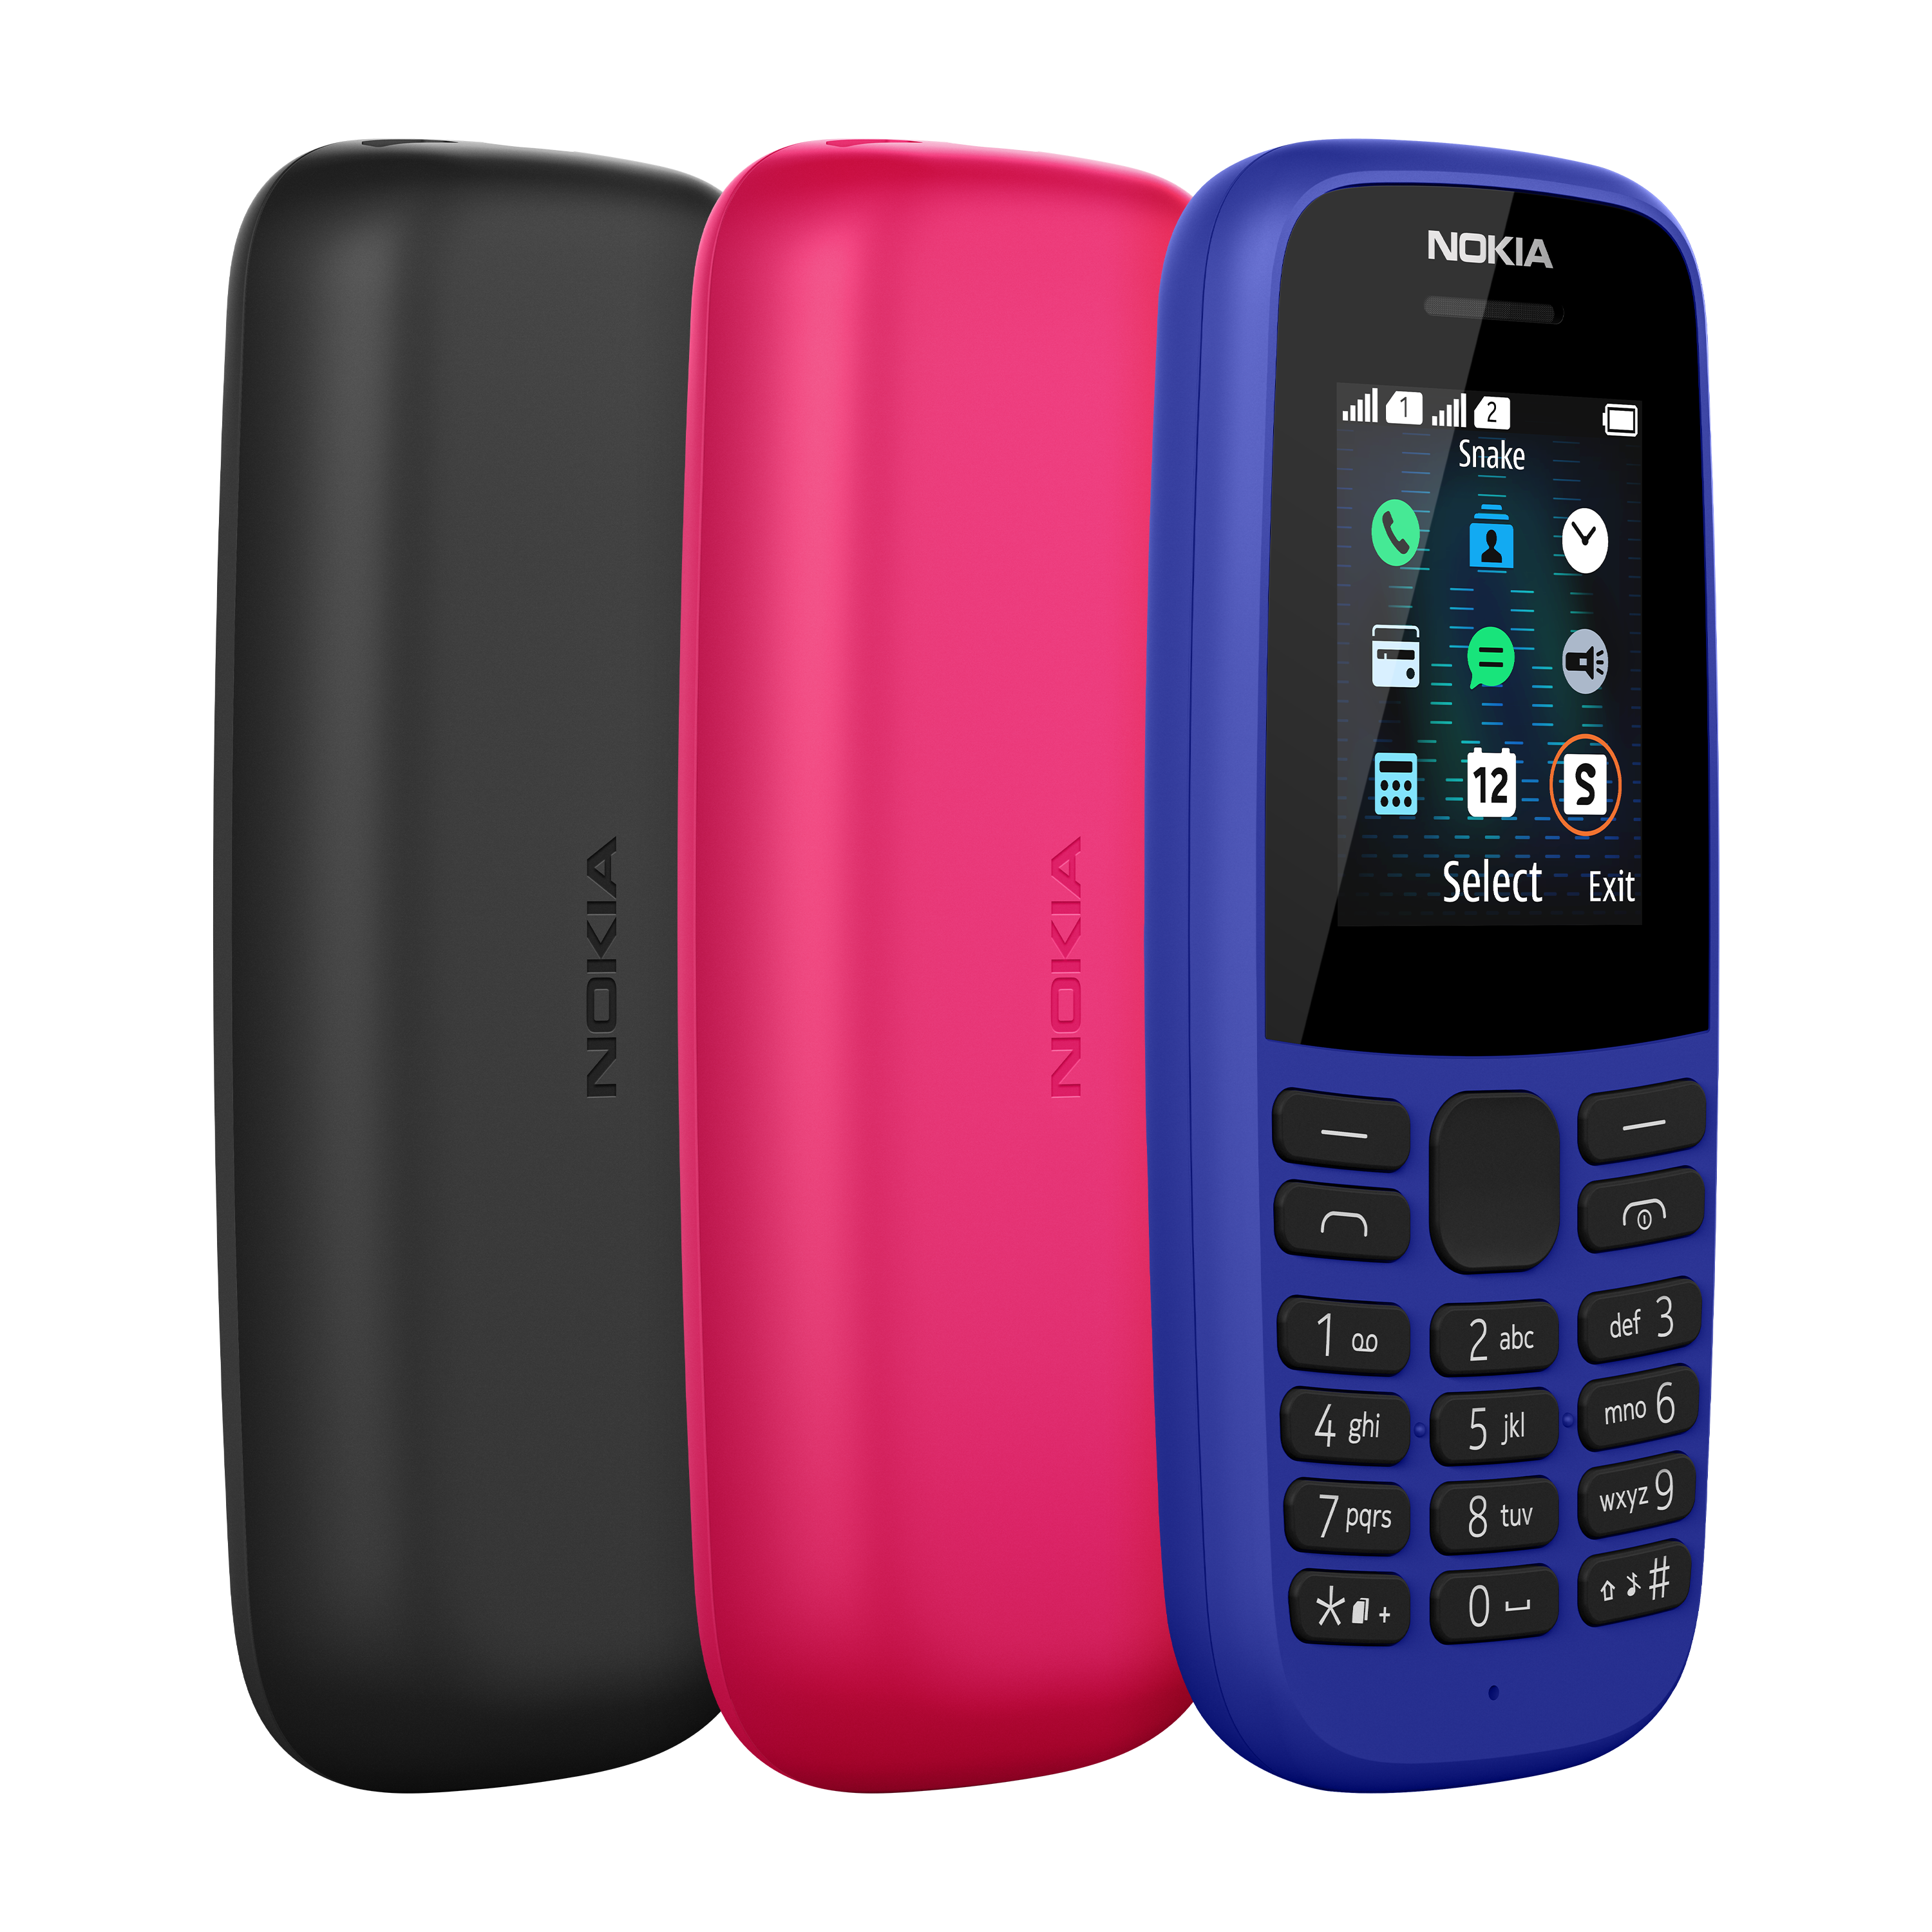 Nokia Mobile launches Nokia 110 4G & Nokia 105 4G. Details inside -  Nokiapoweruser